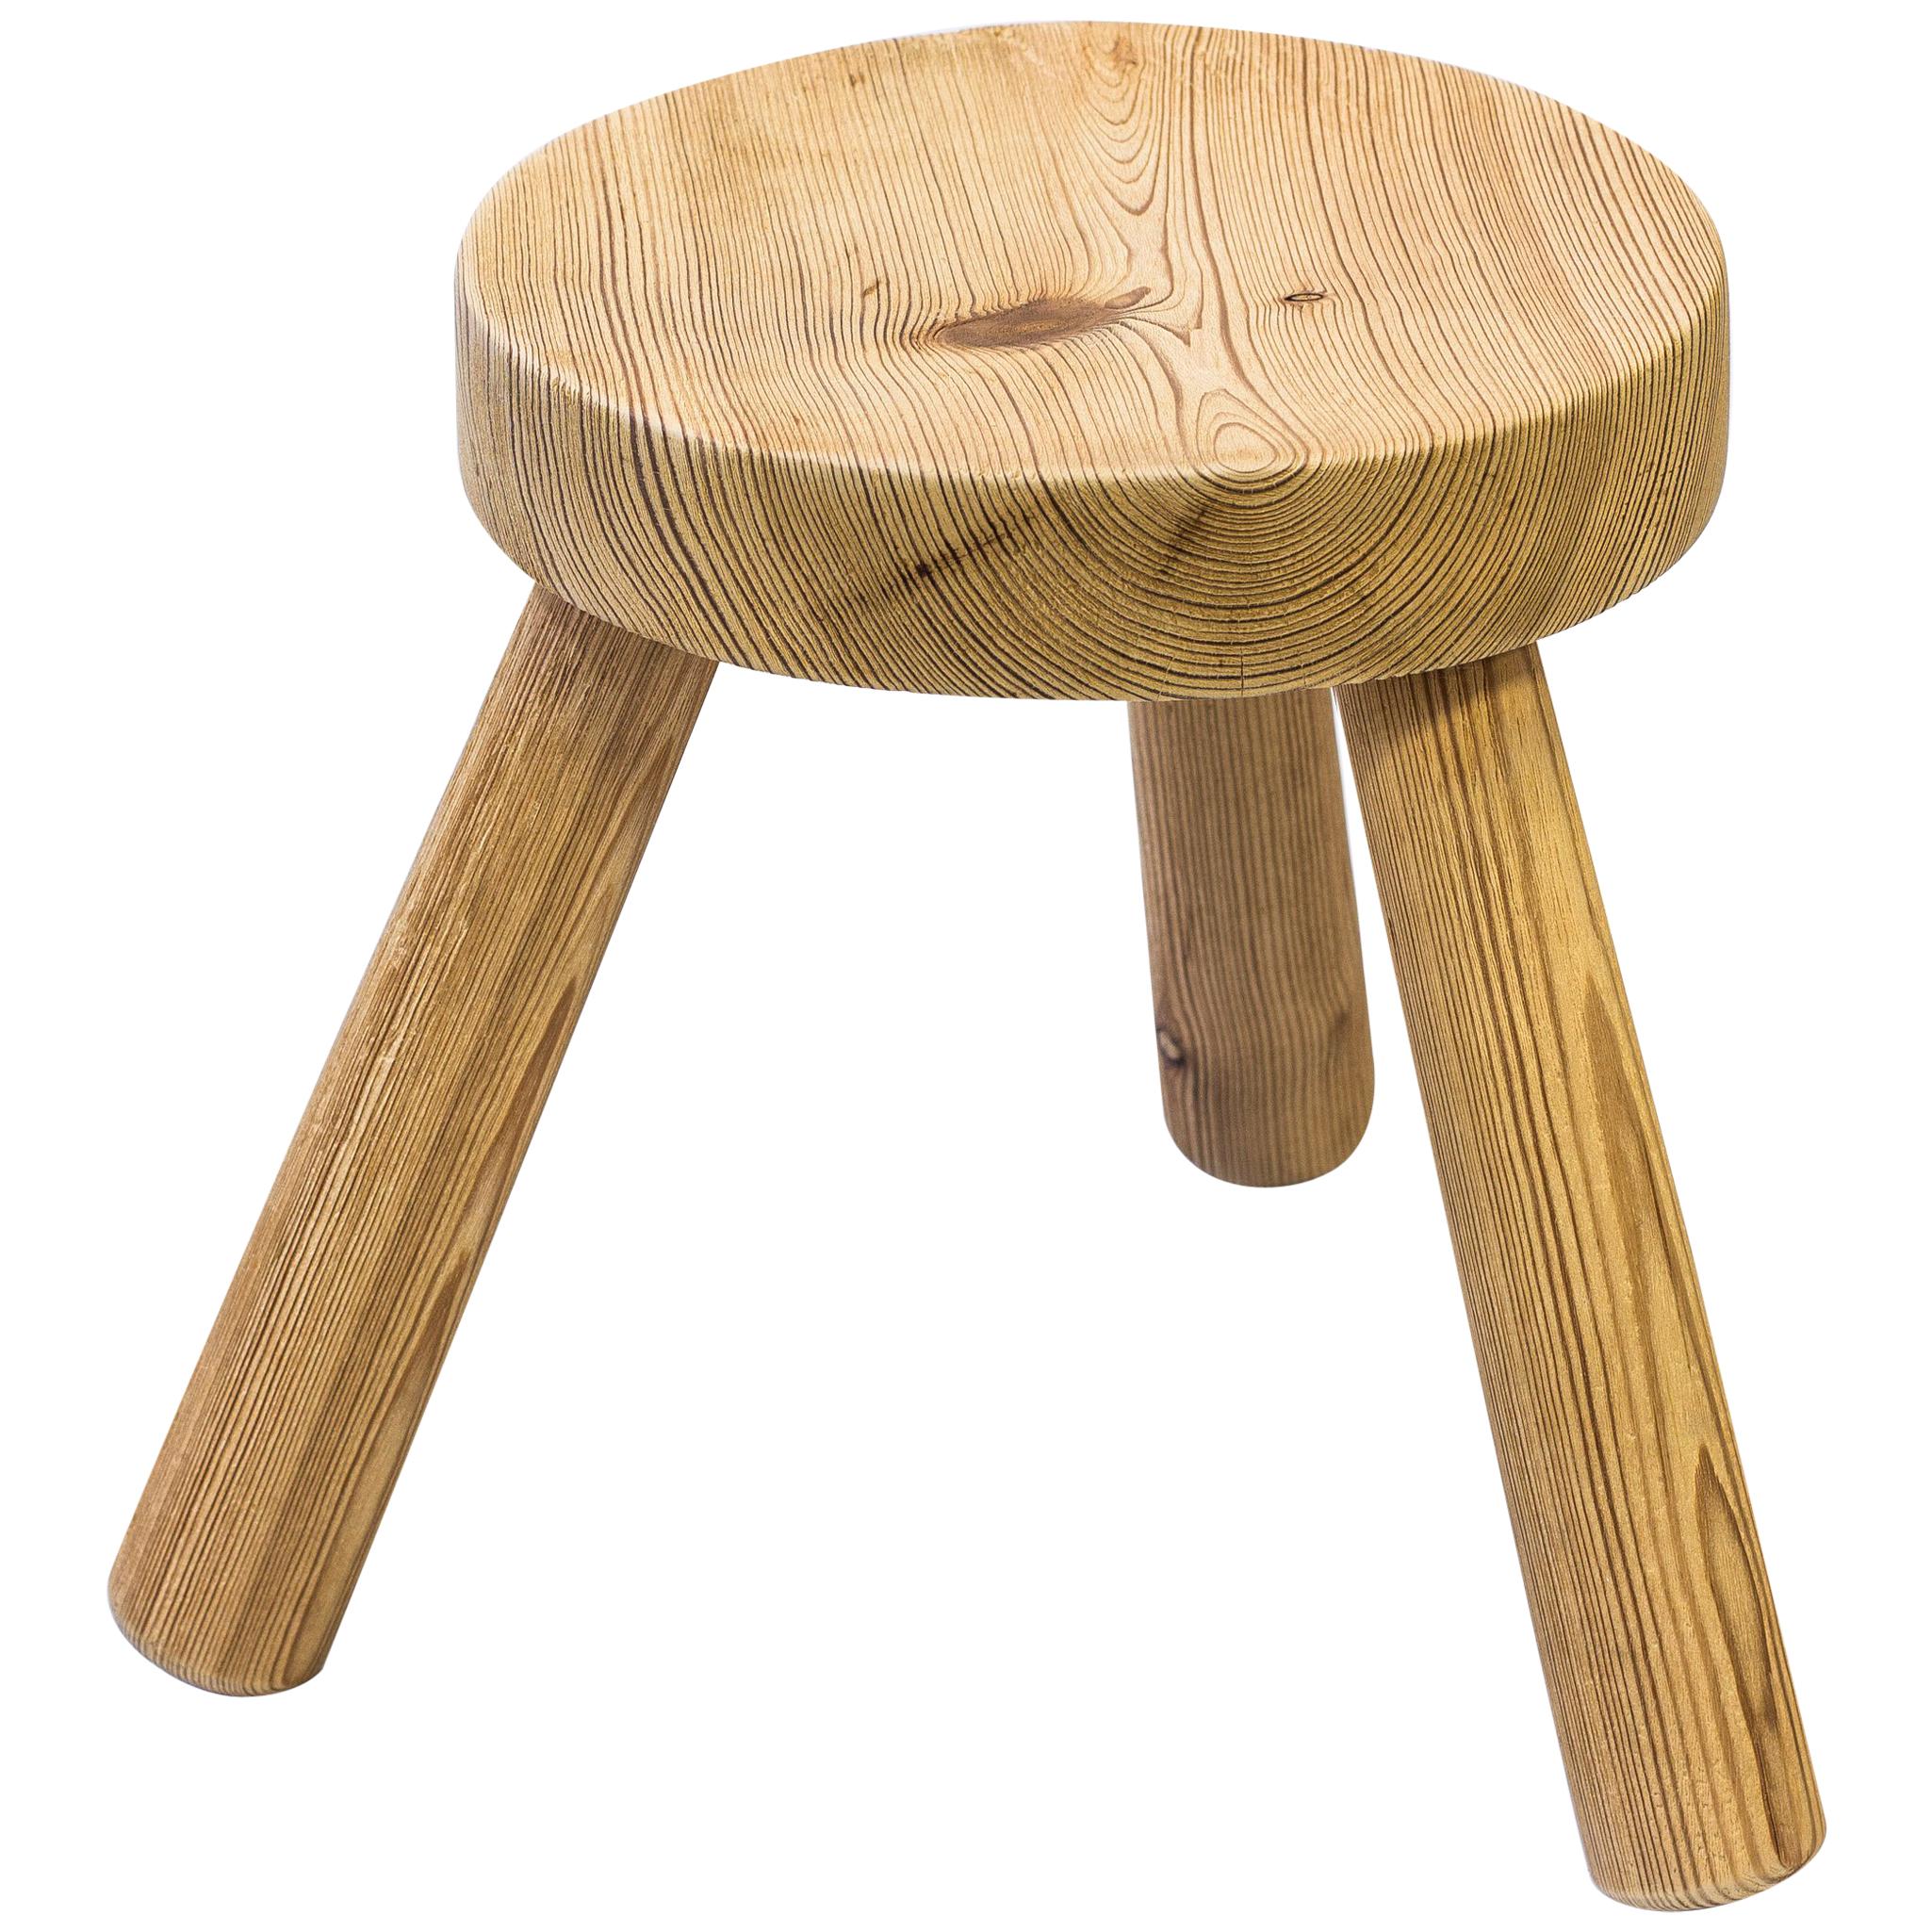 Pine stool by Ingvar Hildingsson, Sweden, 1940s